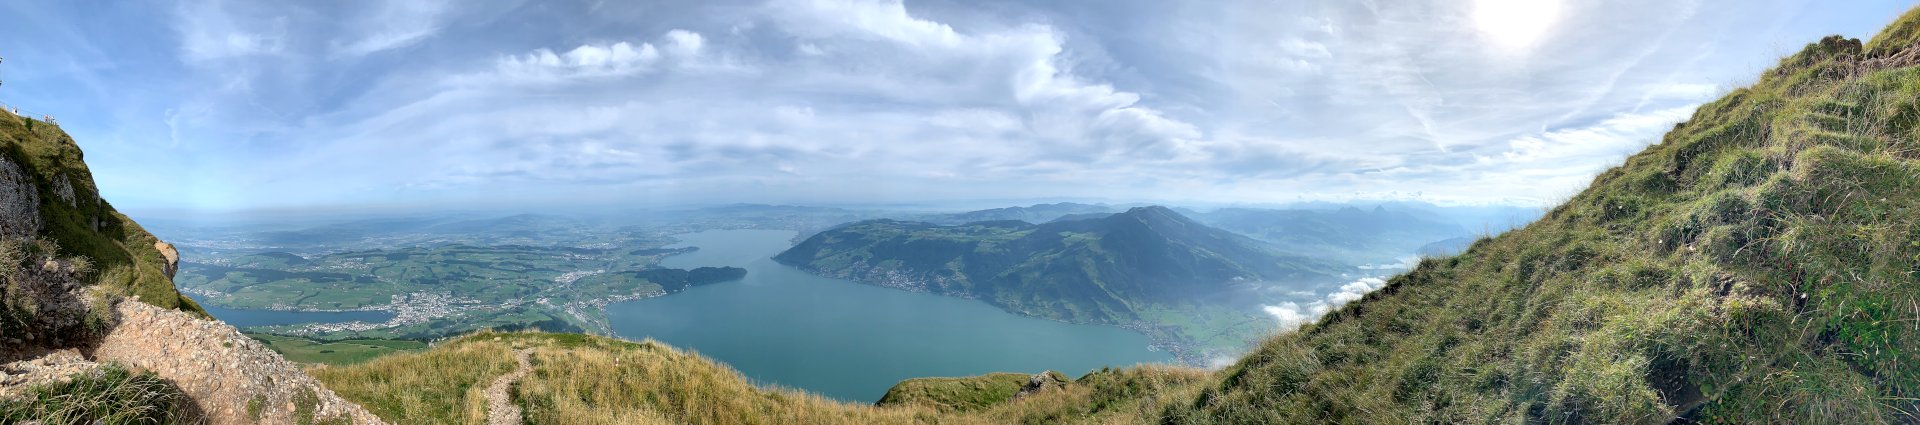 Panorama See zwischen Hügeln